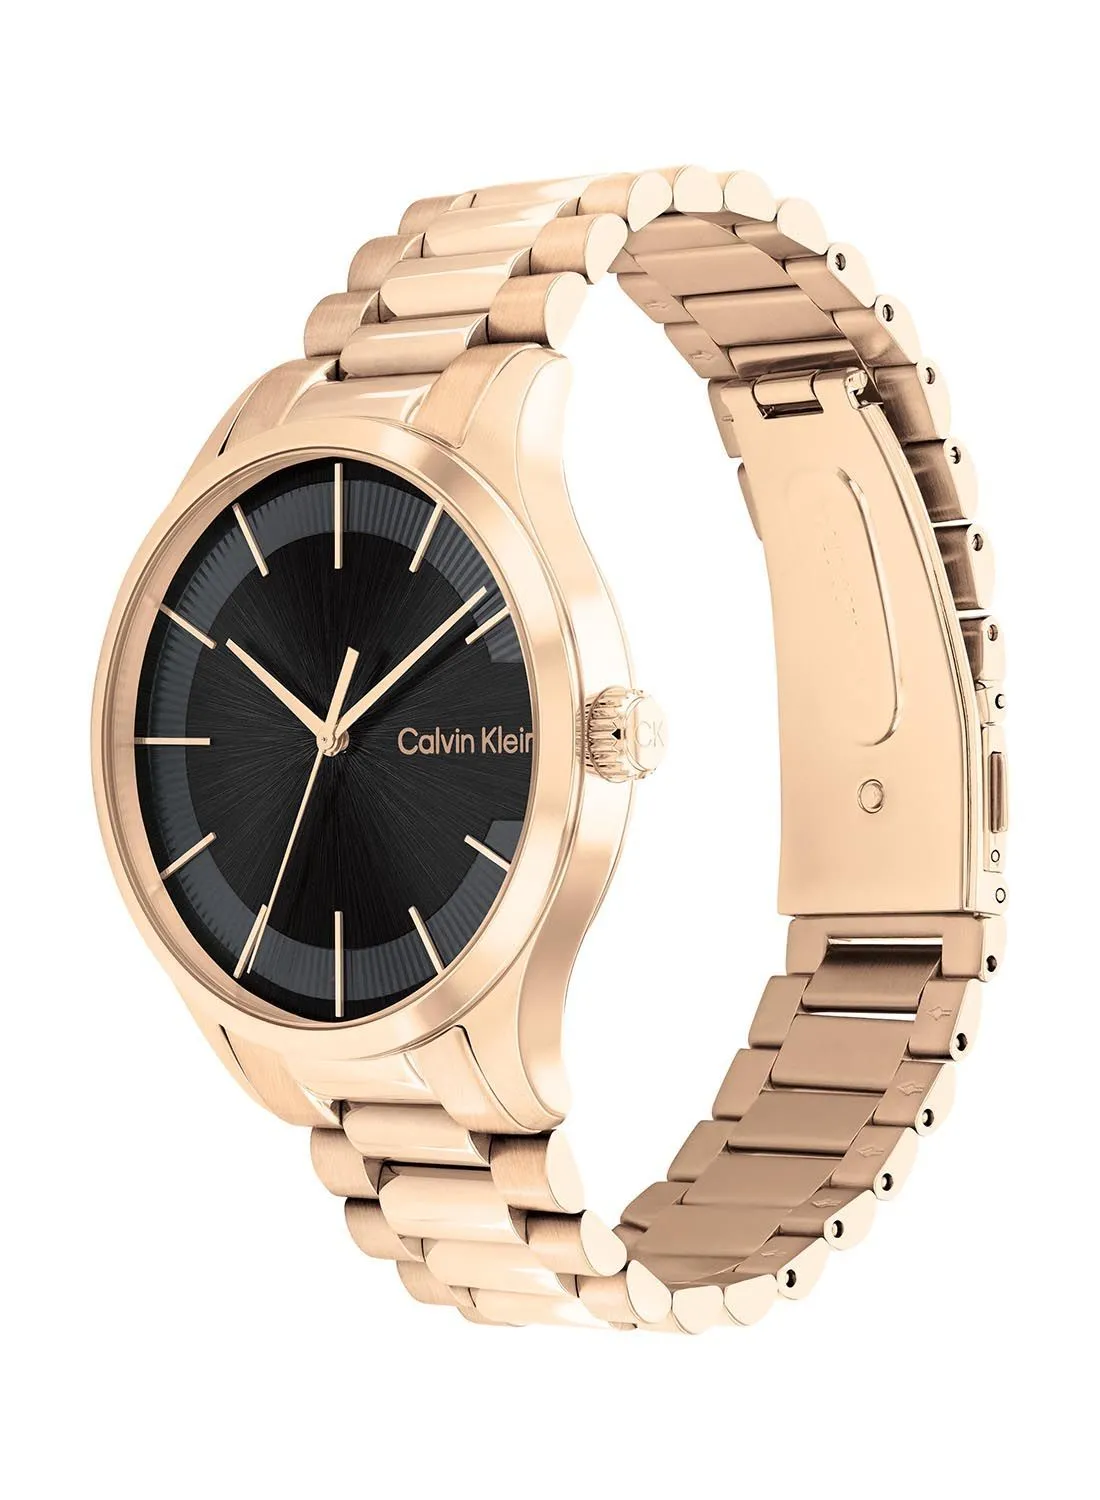 CALVIN KLEIN Analog Round Waterproof  Wrist Watch With Gold Strap 25200037